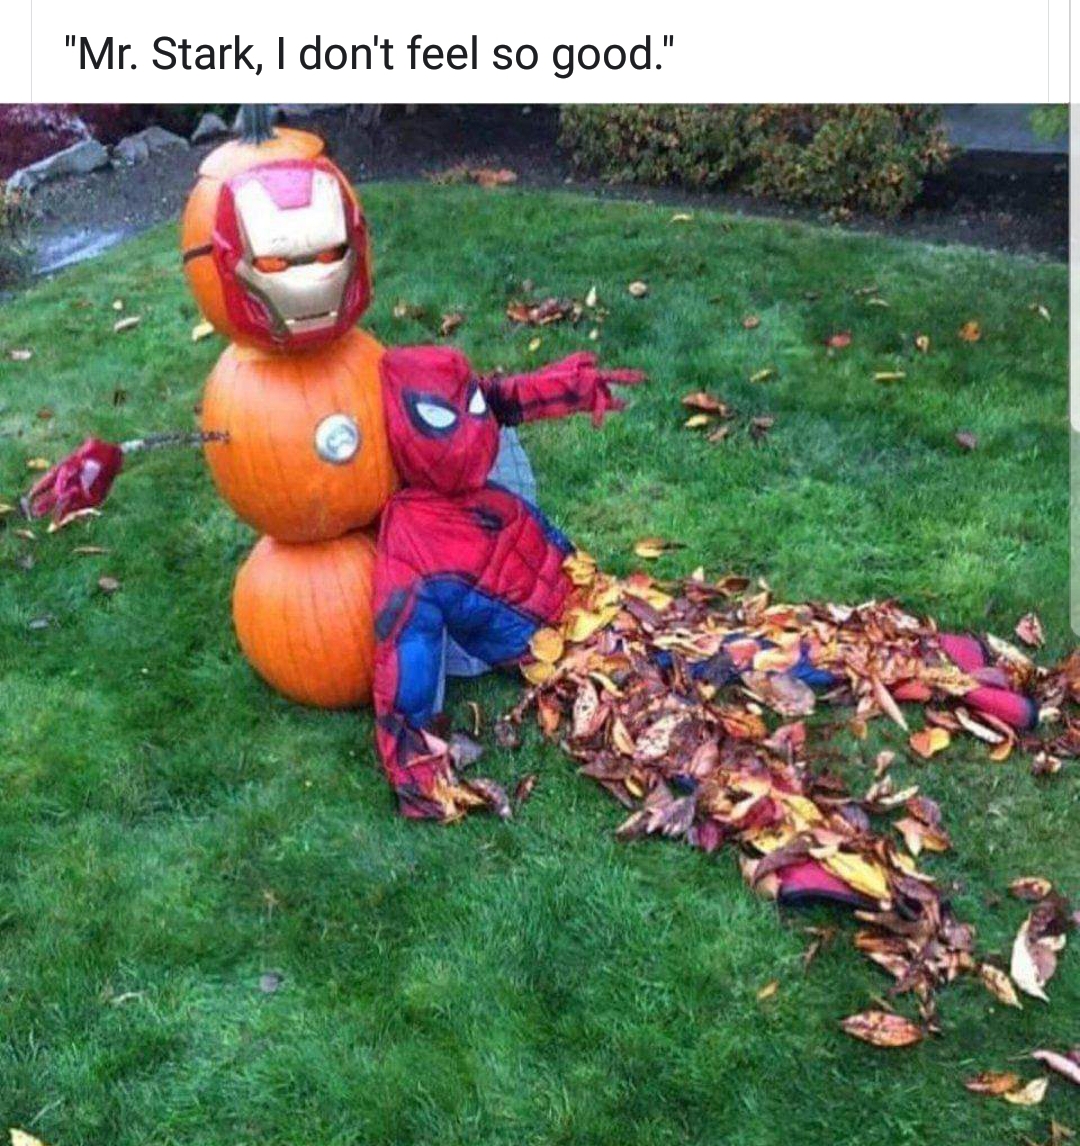 mr stark i don t feel good - "Mr. Stark, I don't feel so good."